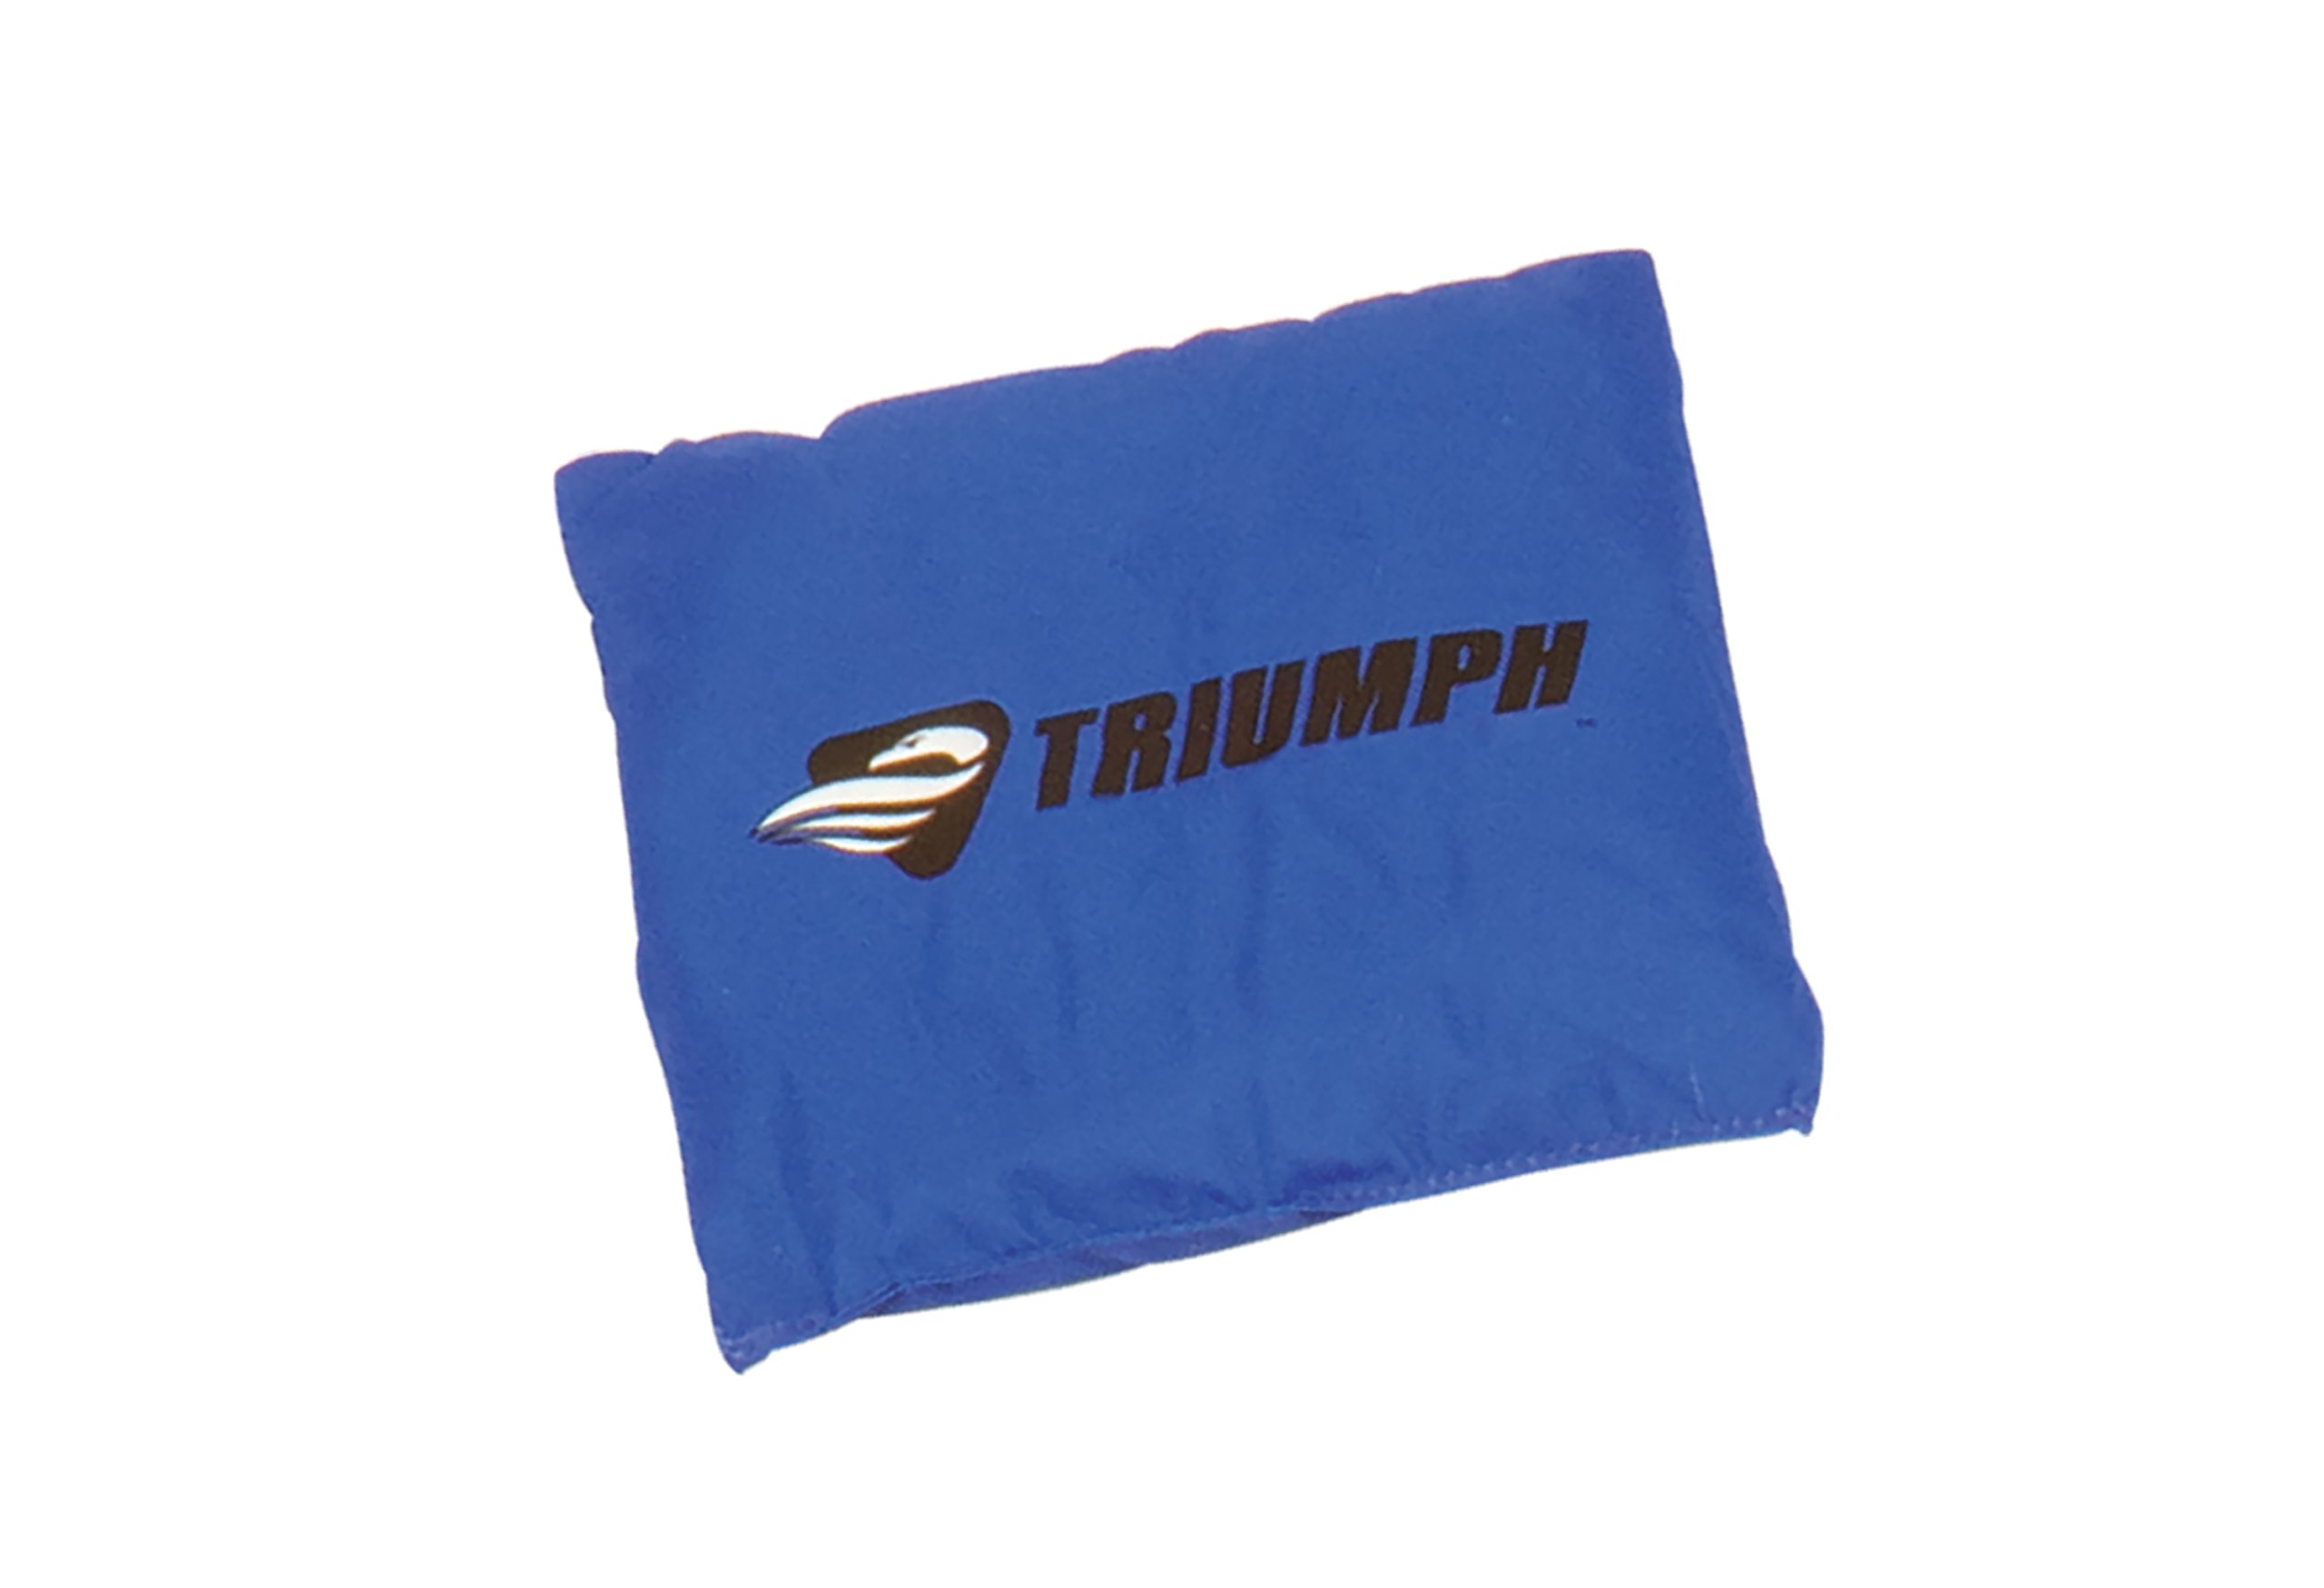 Triumph Premium 2x3 Cornhole Set - Includes 2 Portable, Scratch Resistant Bag Toss Boards and 8 Cornhole Bags